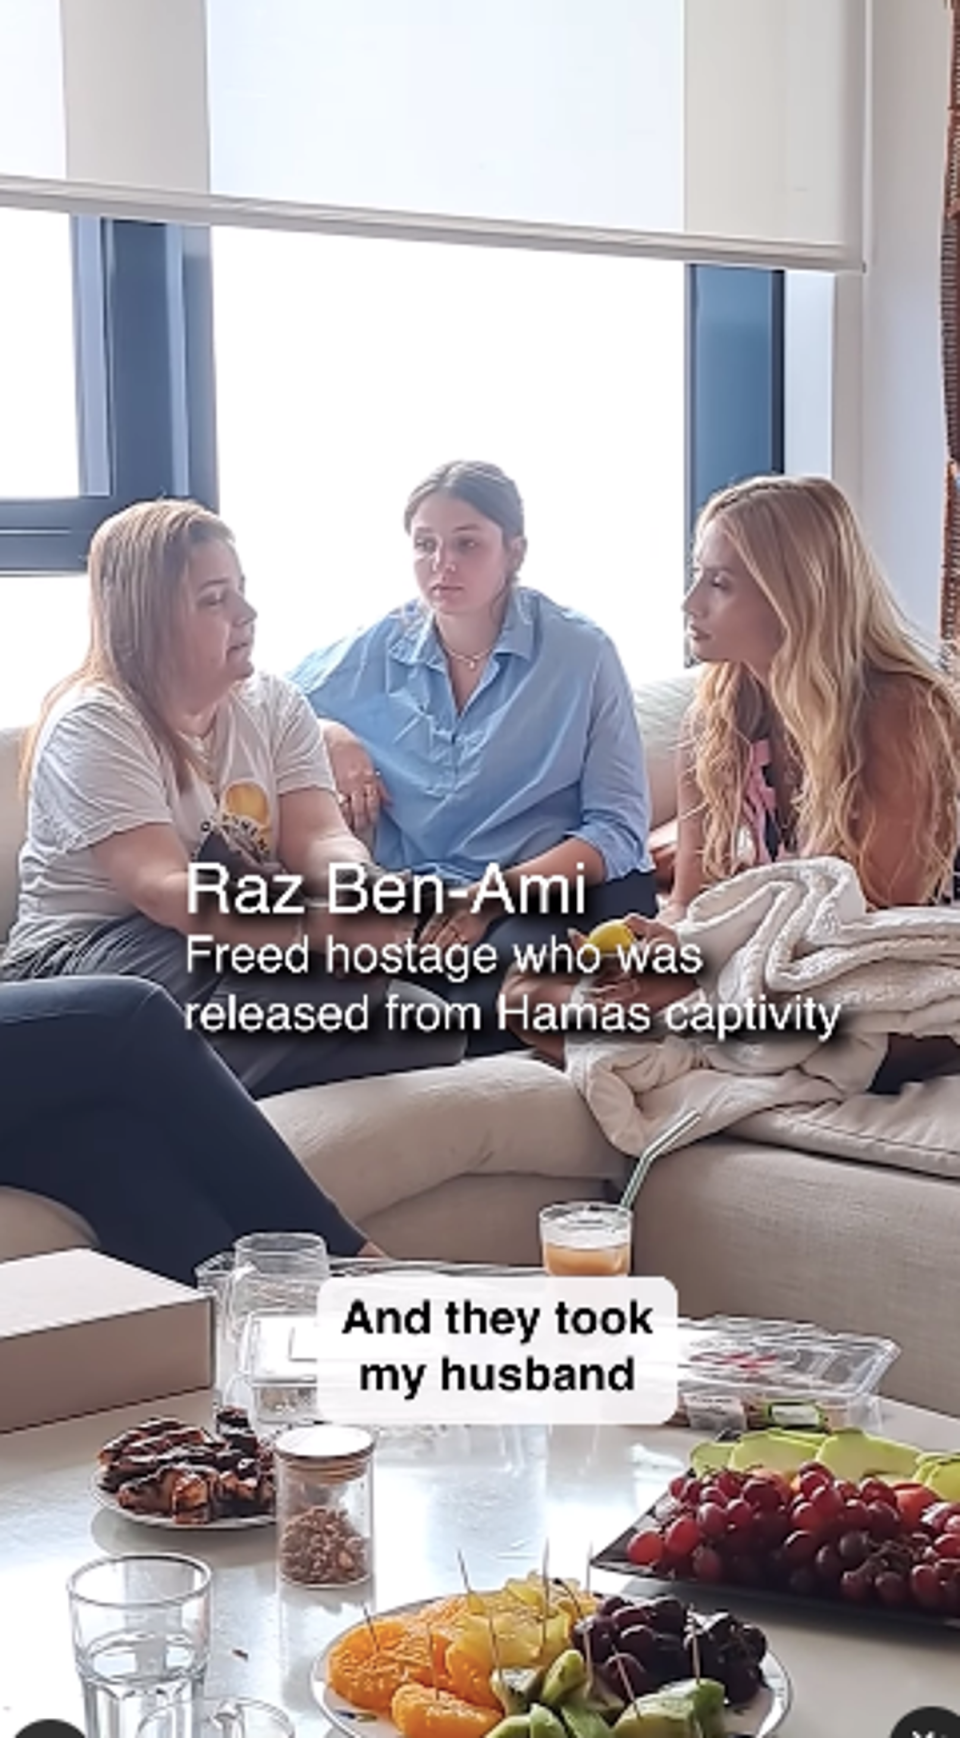 Montana Tucker (right) is seen sitting with Raz Ben Ami (left) and her daughter (Montana Tucker / Instagram)